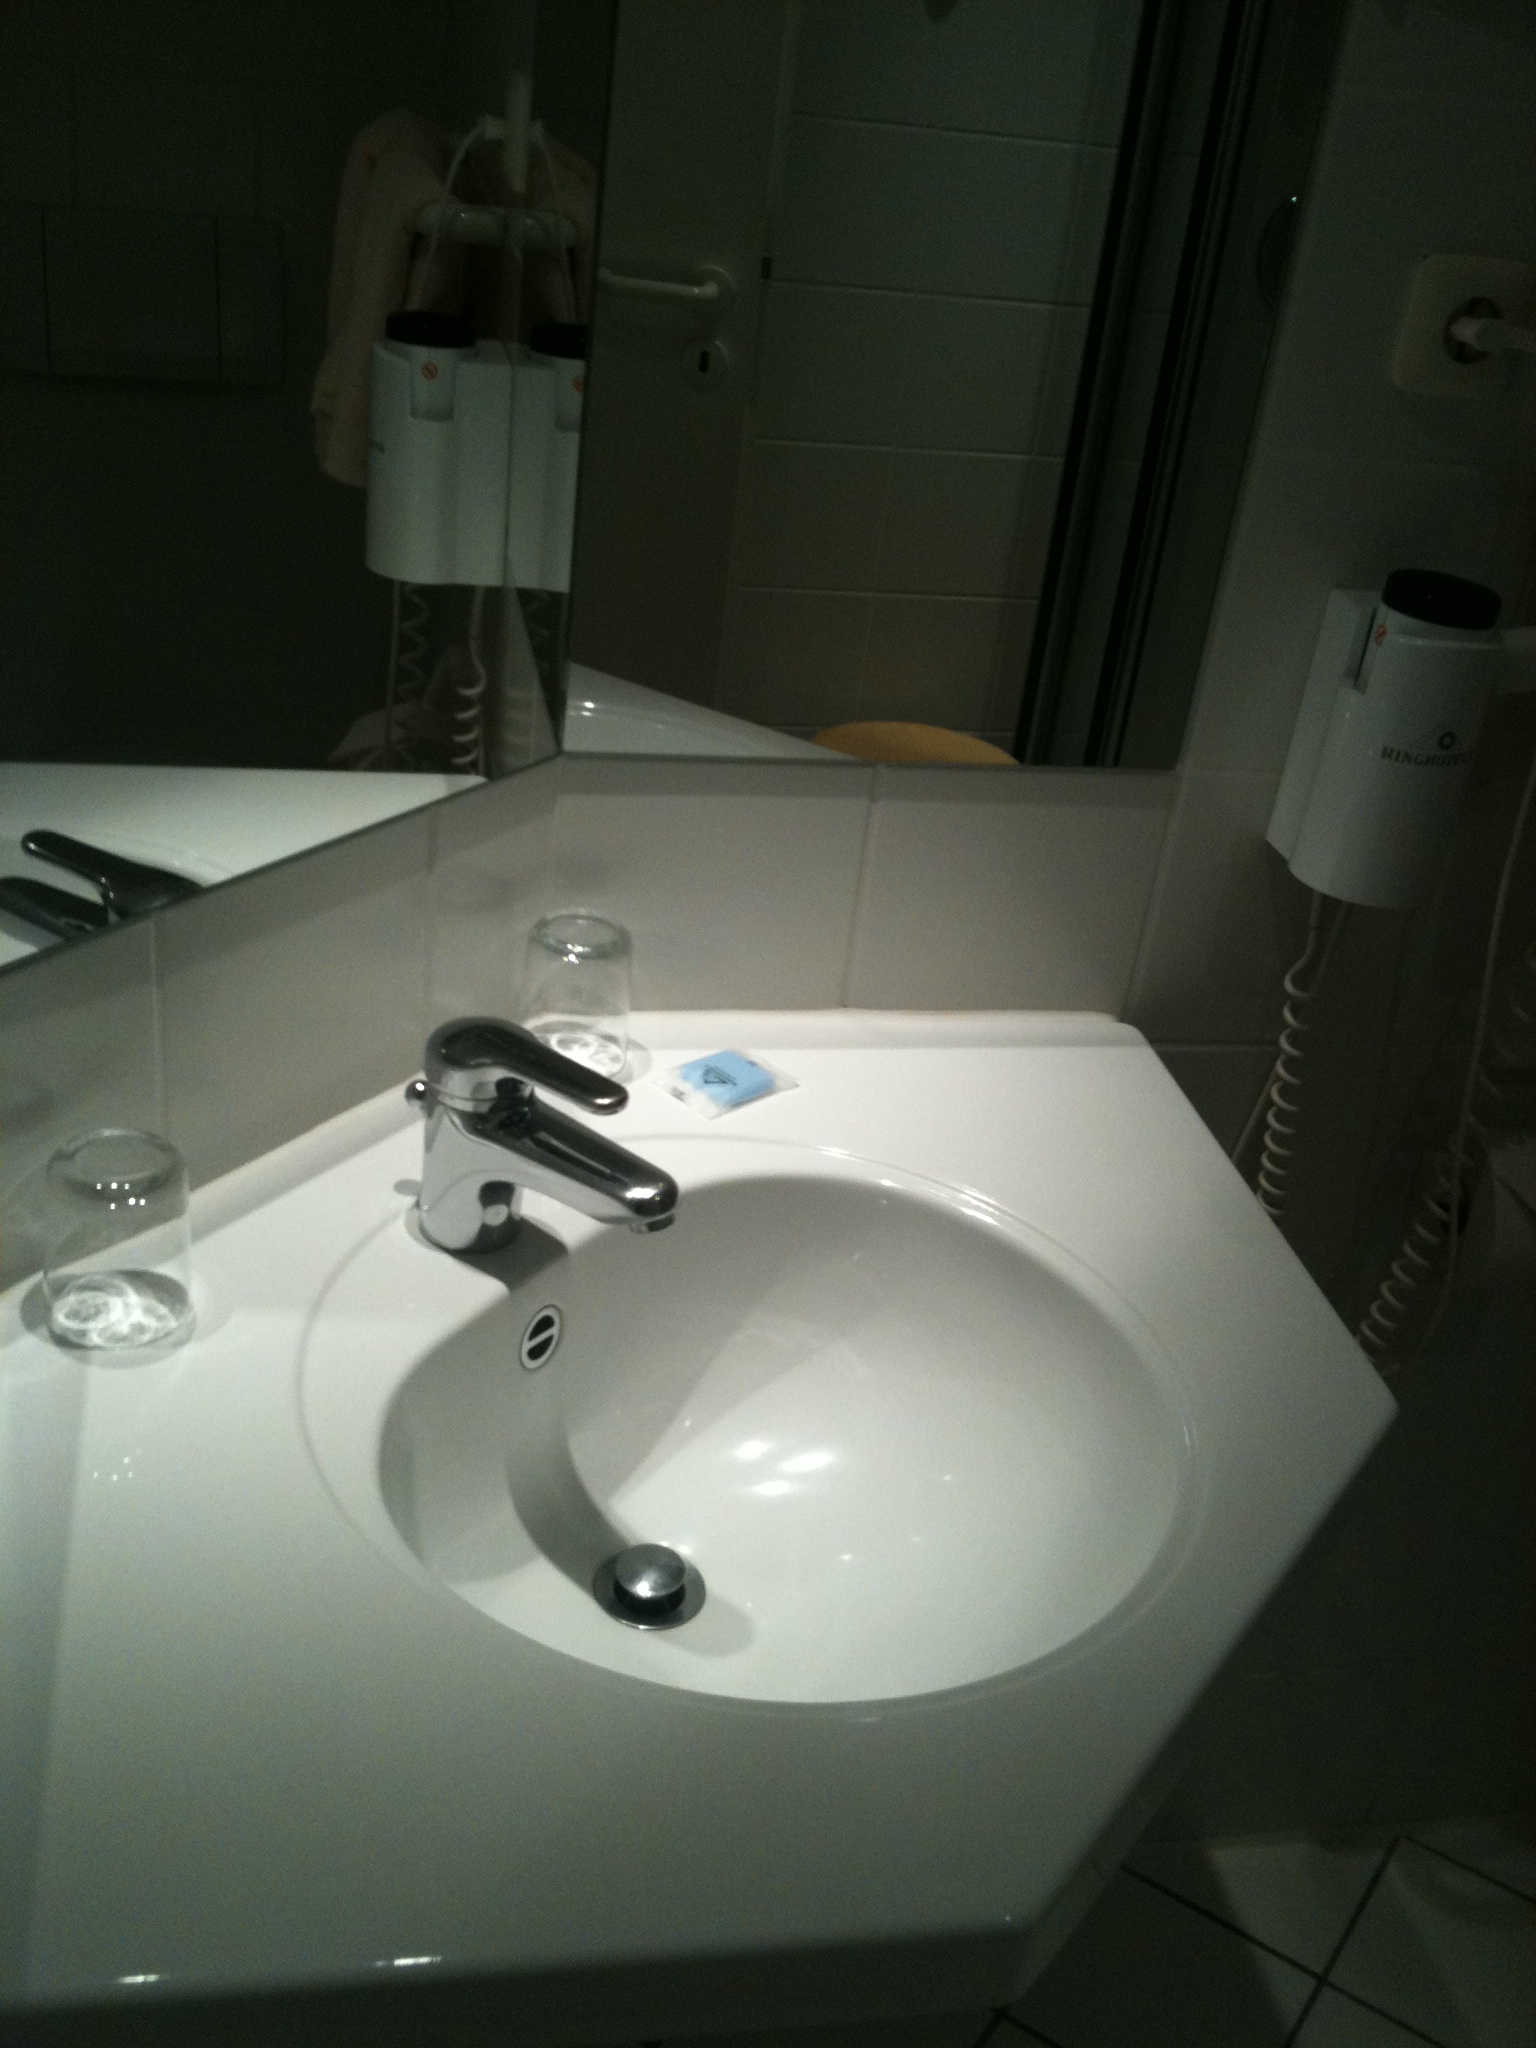 Waschbecken im Badezimmer mit Panoramaspiegel - für die Egomanen unter uns